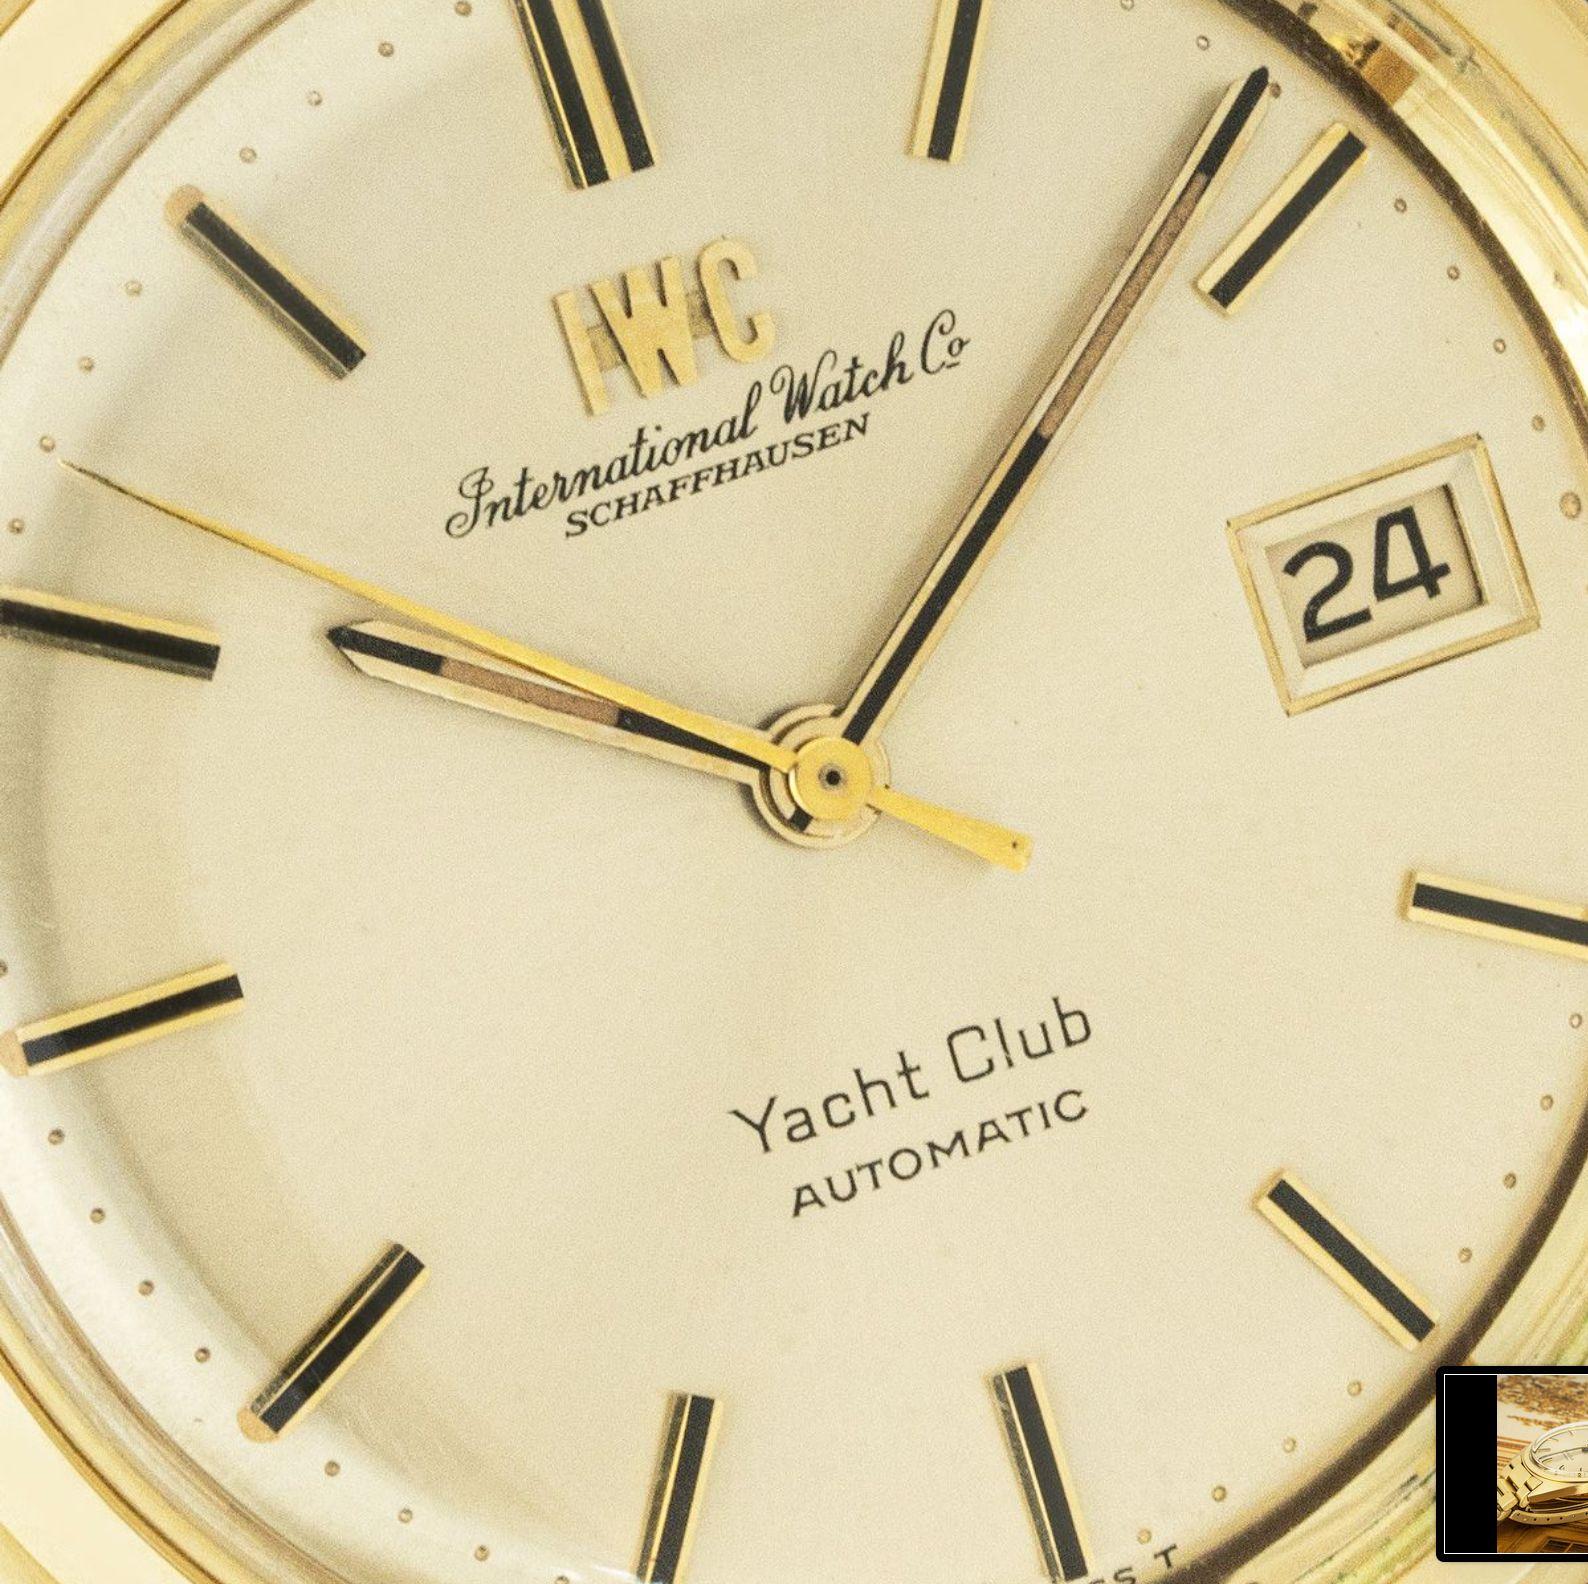 iwc yacht club vintage